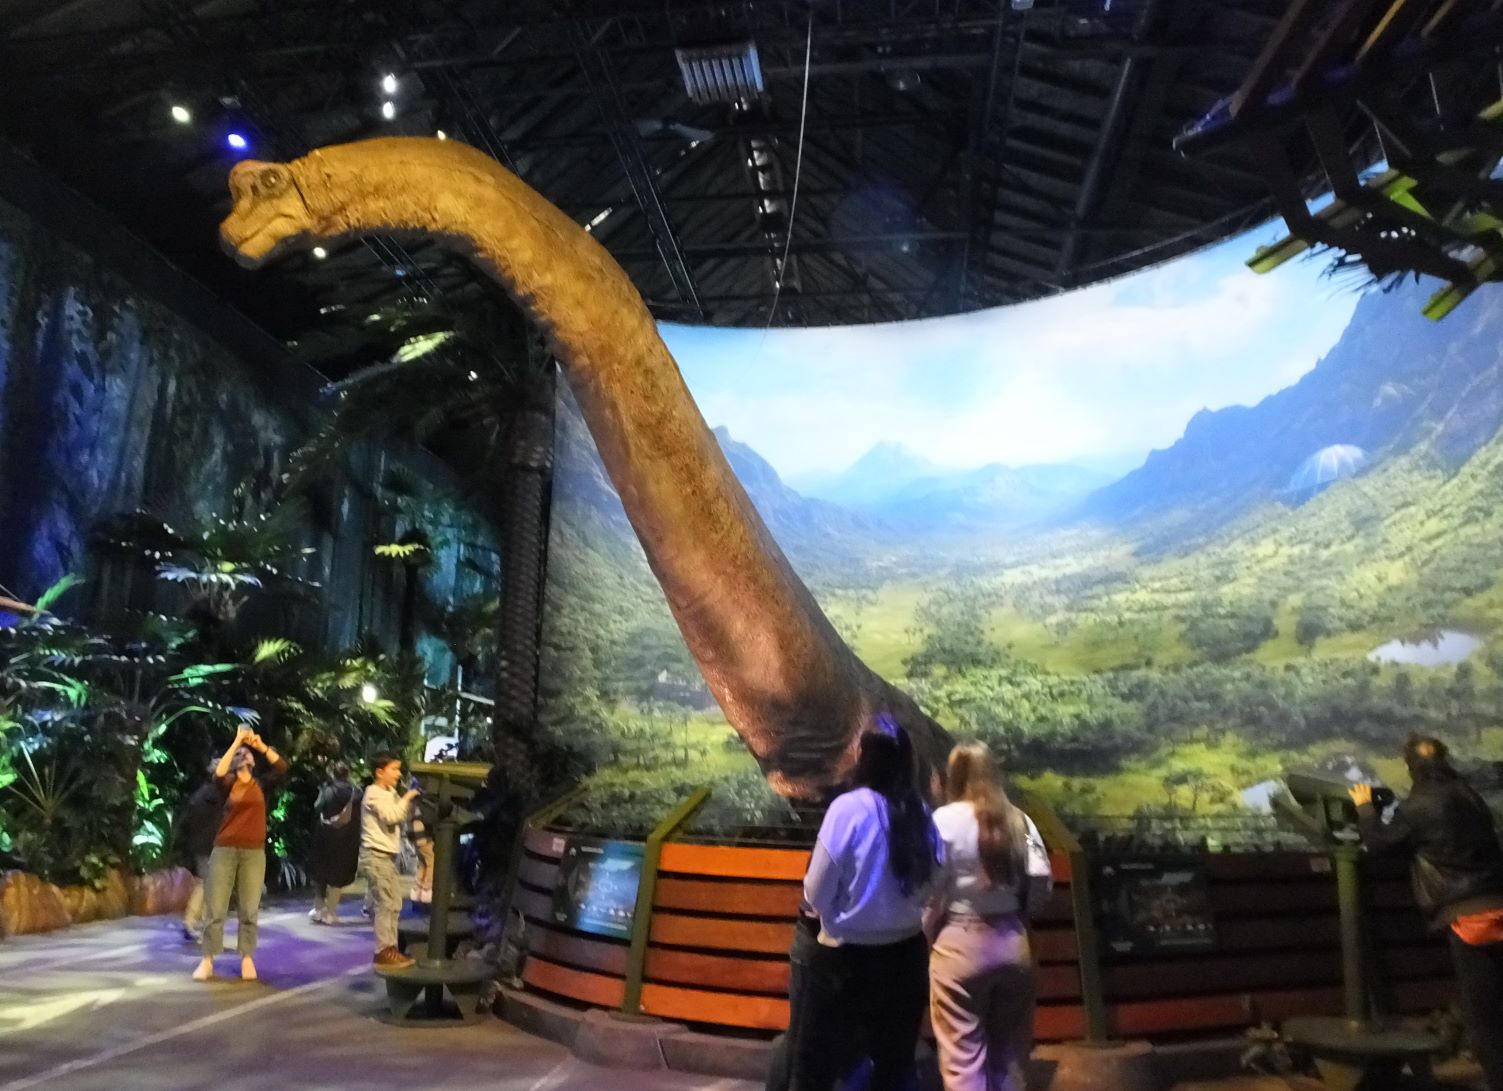 Und da ist er auch schon: der gigantische Brachiosaurus mit dem 8 Meter langen überaus beweglichen Hals. Natürlich ein beliebtes Foto- und Videomotiv. Aufnahmen ohne Blitz dürfen gemacht werden.